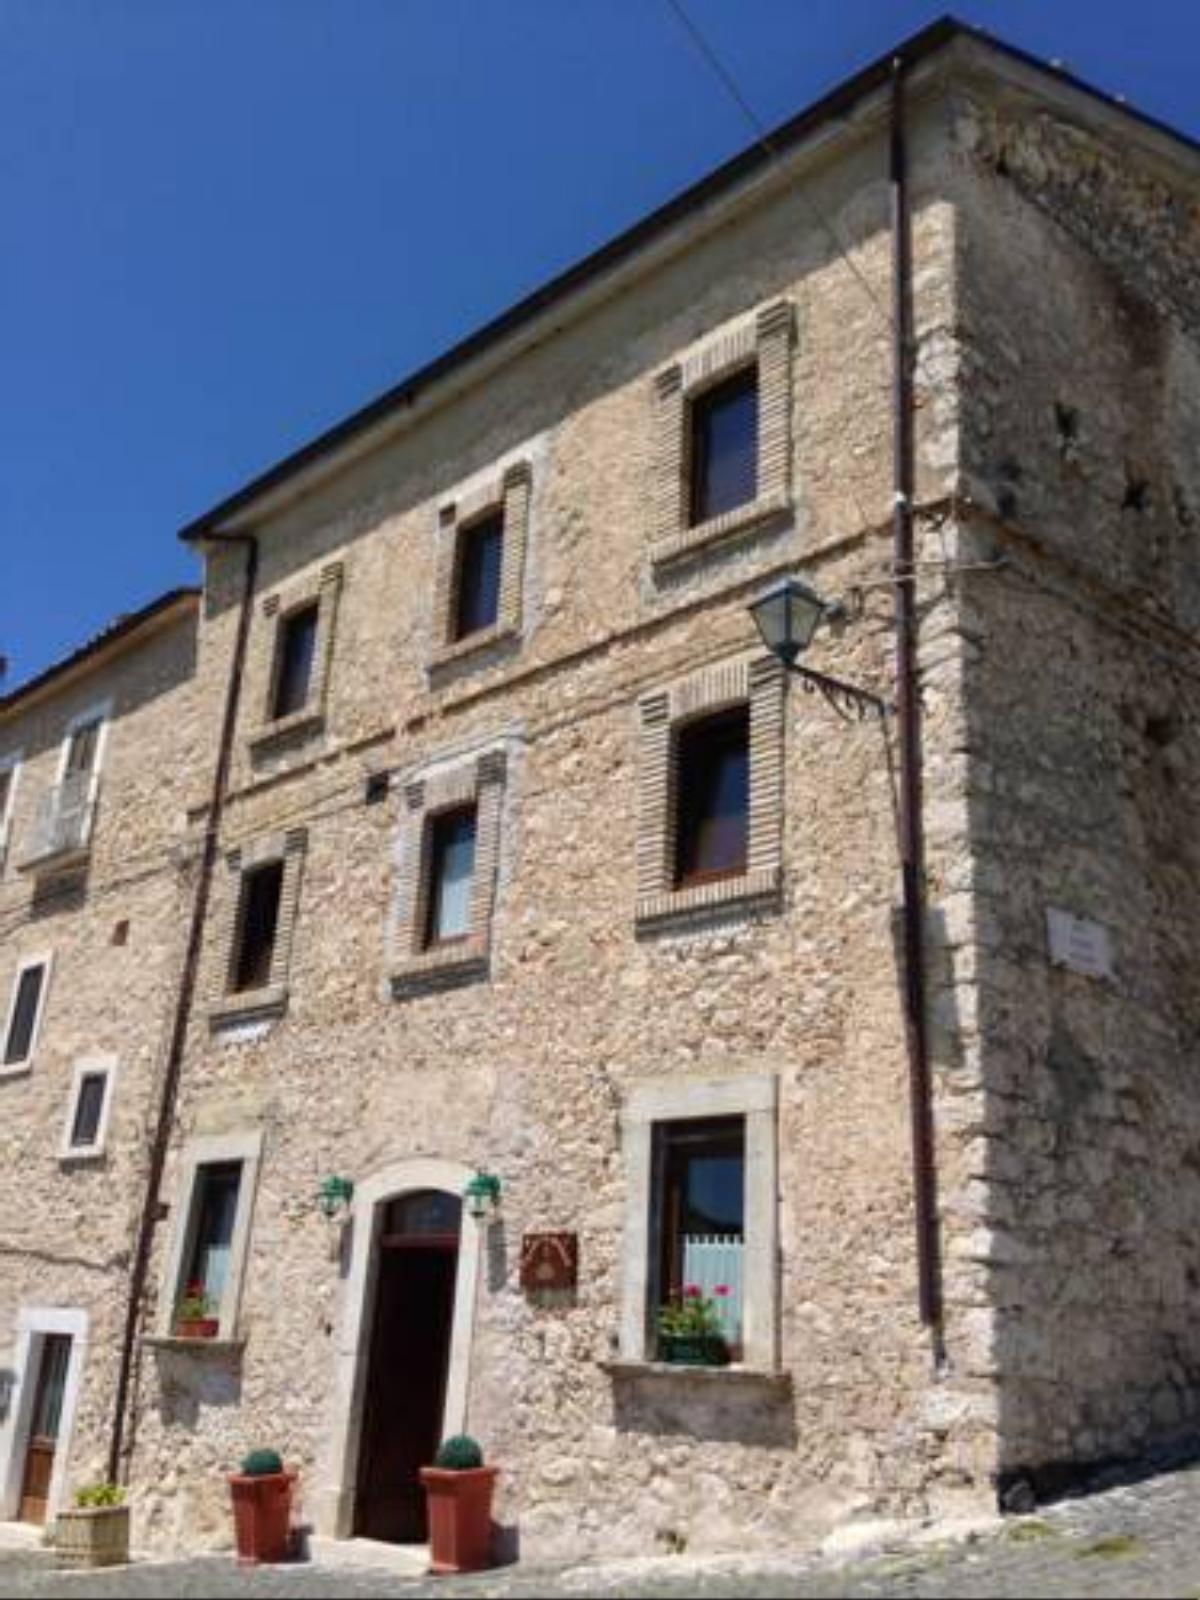 La Locanda delle Streghe - Relais Ristorante Hotel Castel del Monte Italy